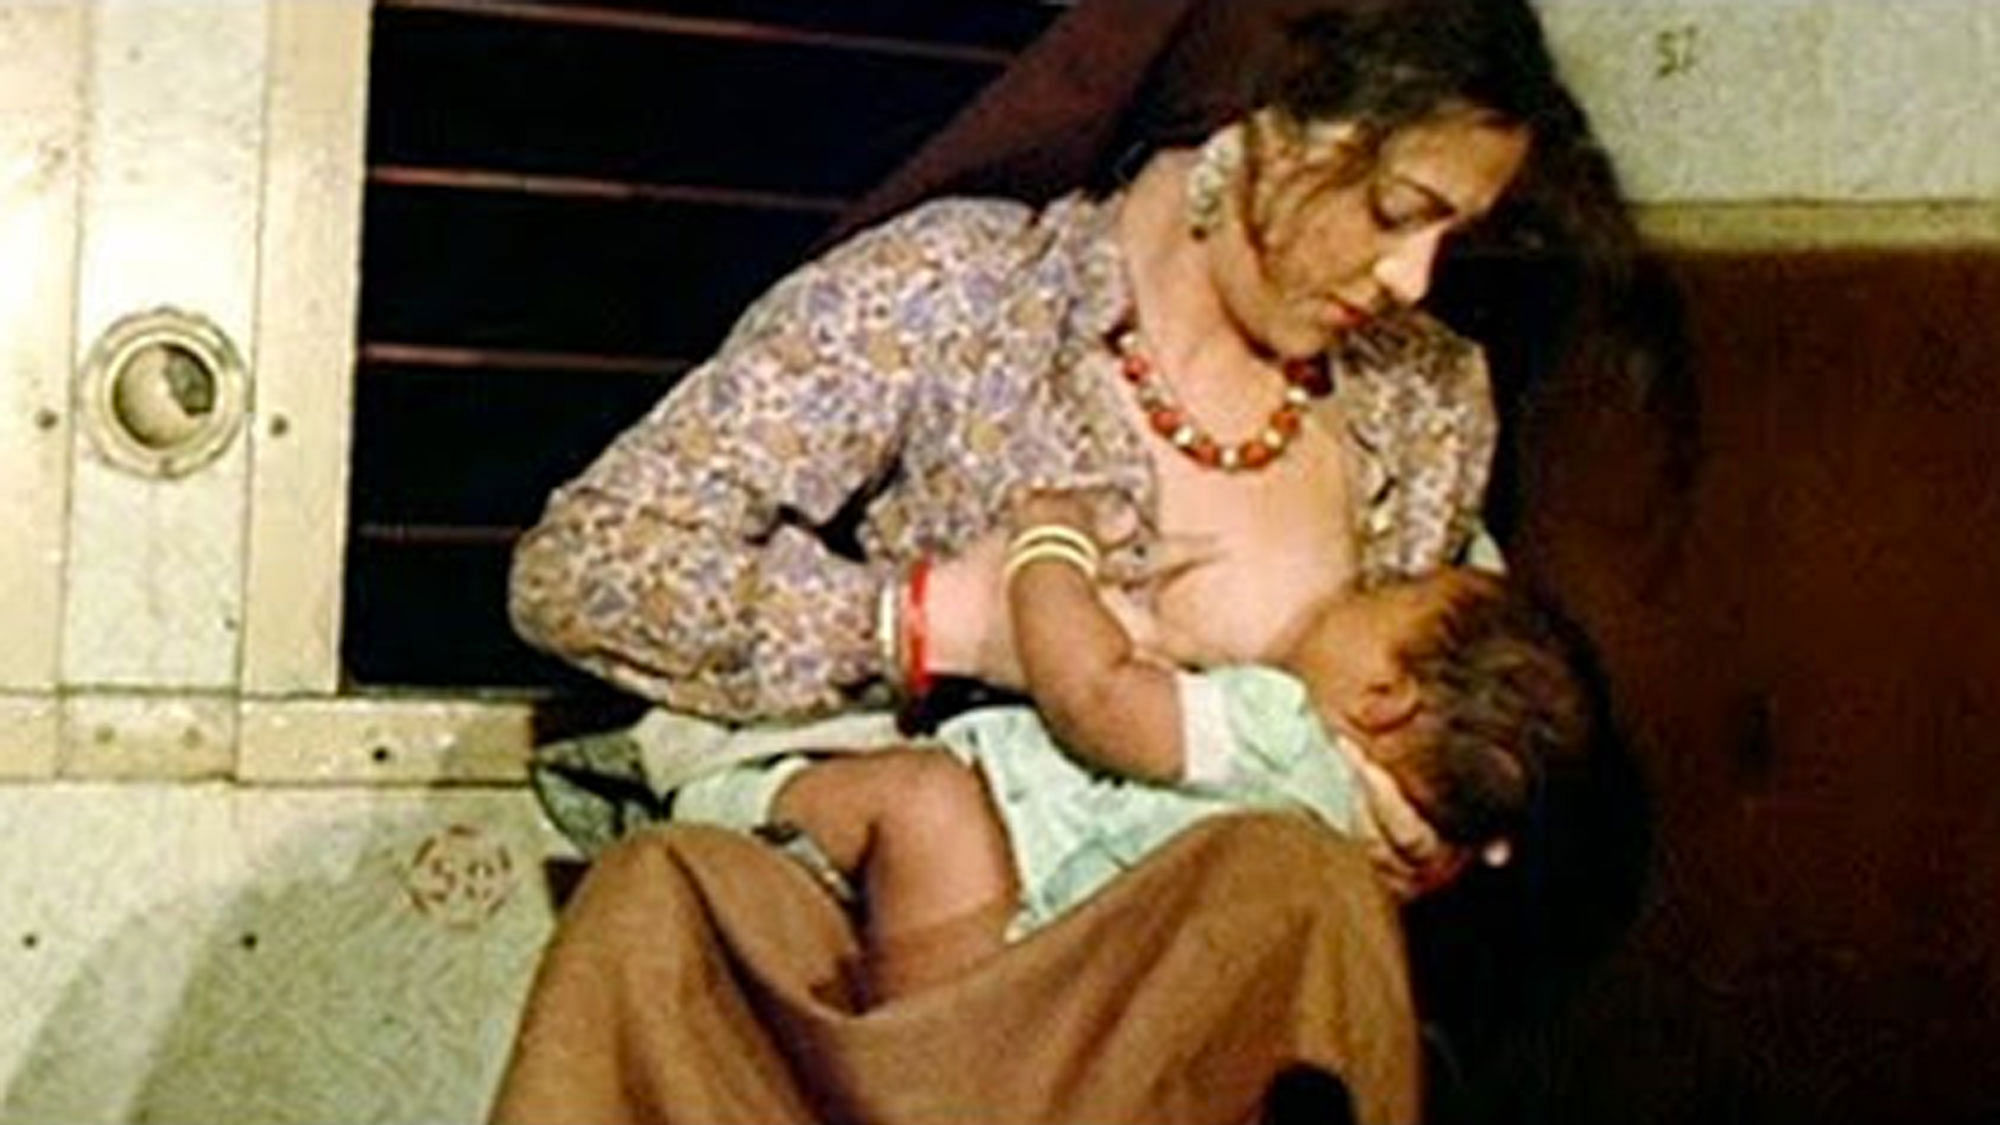 Mandakini in a scene from the movie <i>Ram Teri Ganga Maili </i>where she is breastfeeding her baby. (Photo Courtesy: YouTube screengrab)